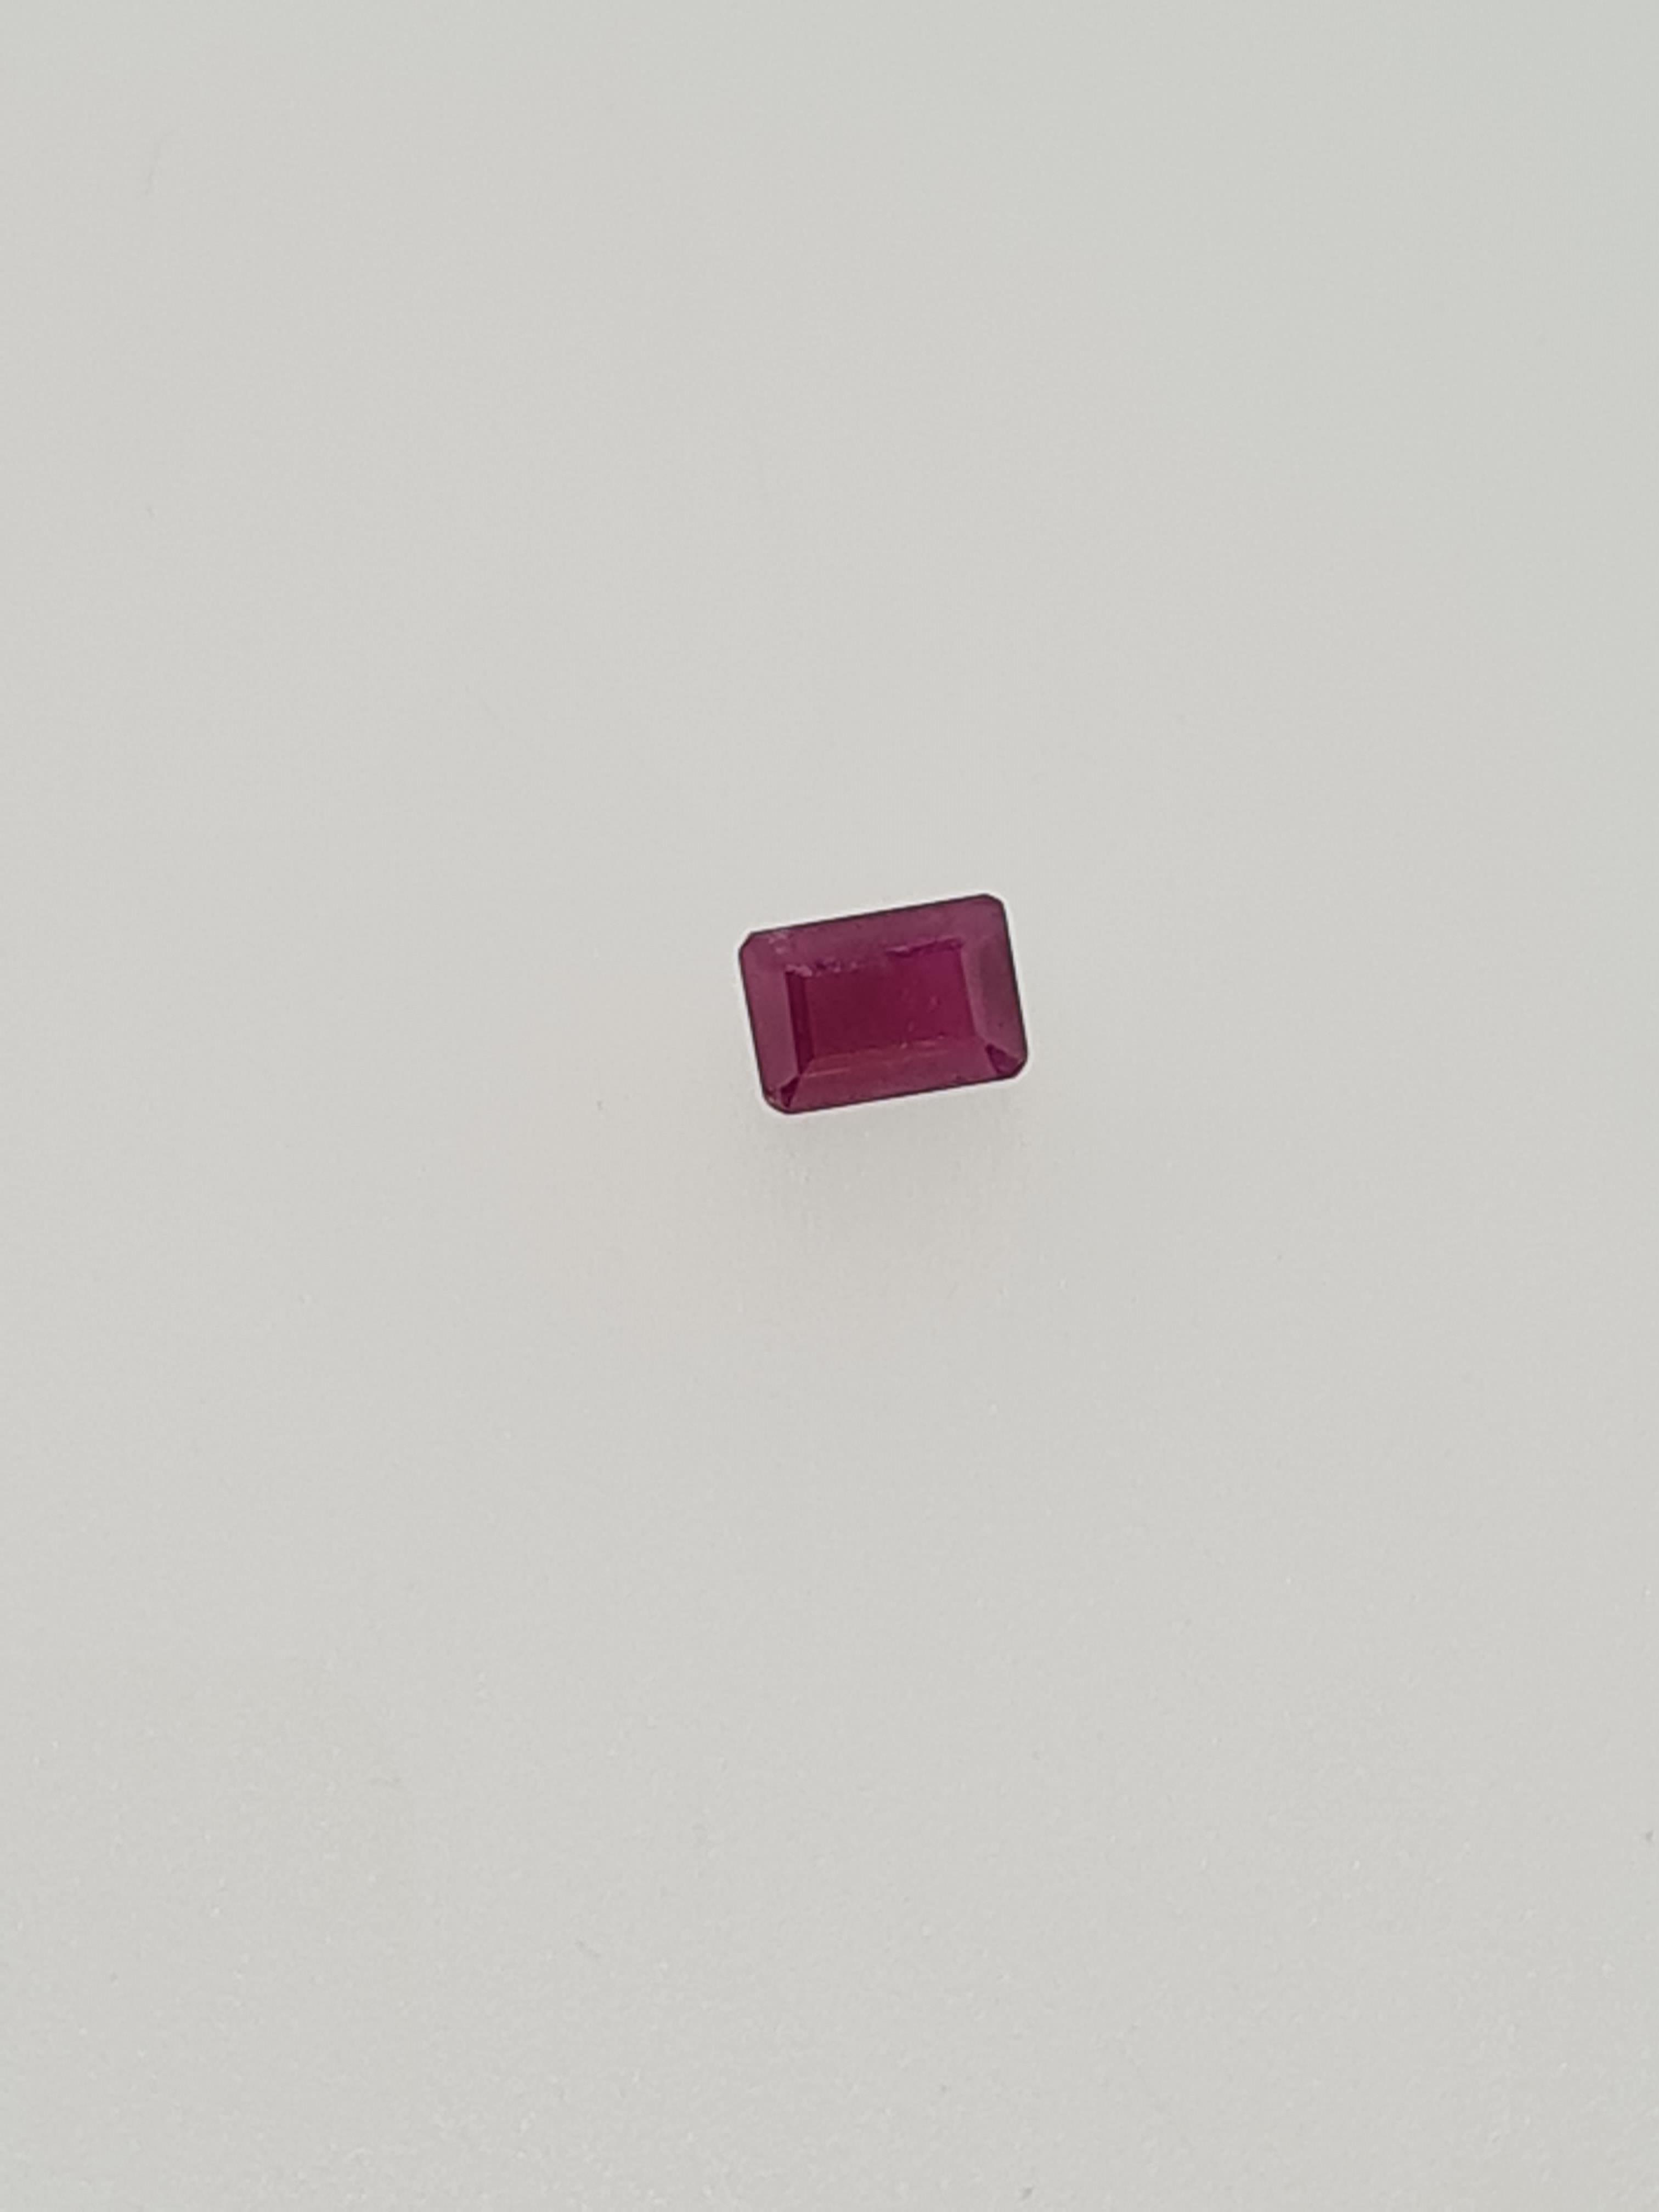 Ruby emerald cut gem stone - Image 5 of 5